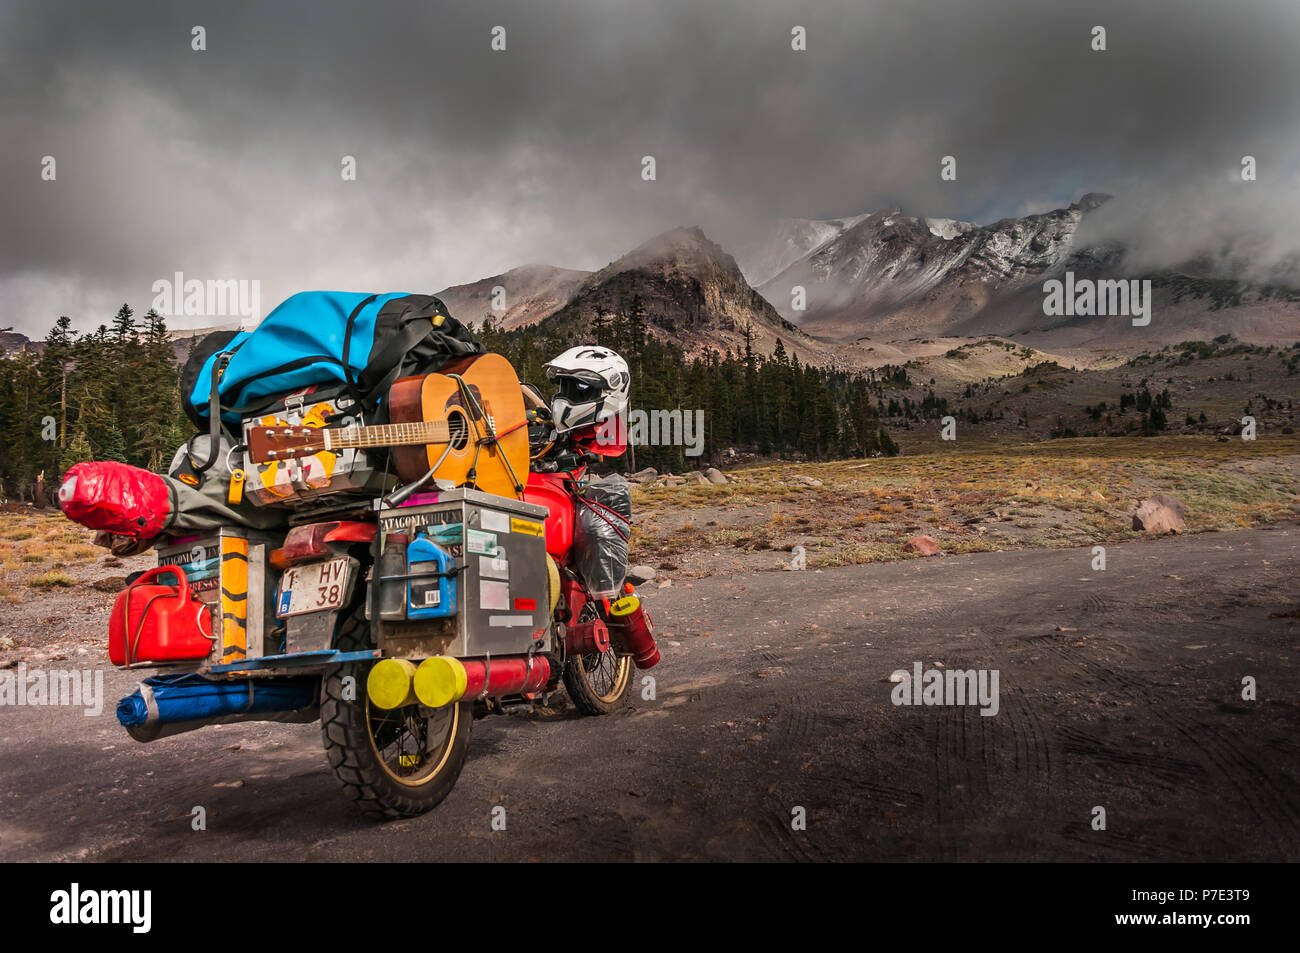 Moto chargée sur la route avec ciel dramatique sur le Mont Shasta, Californie, USA Banque D'Images